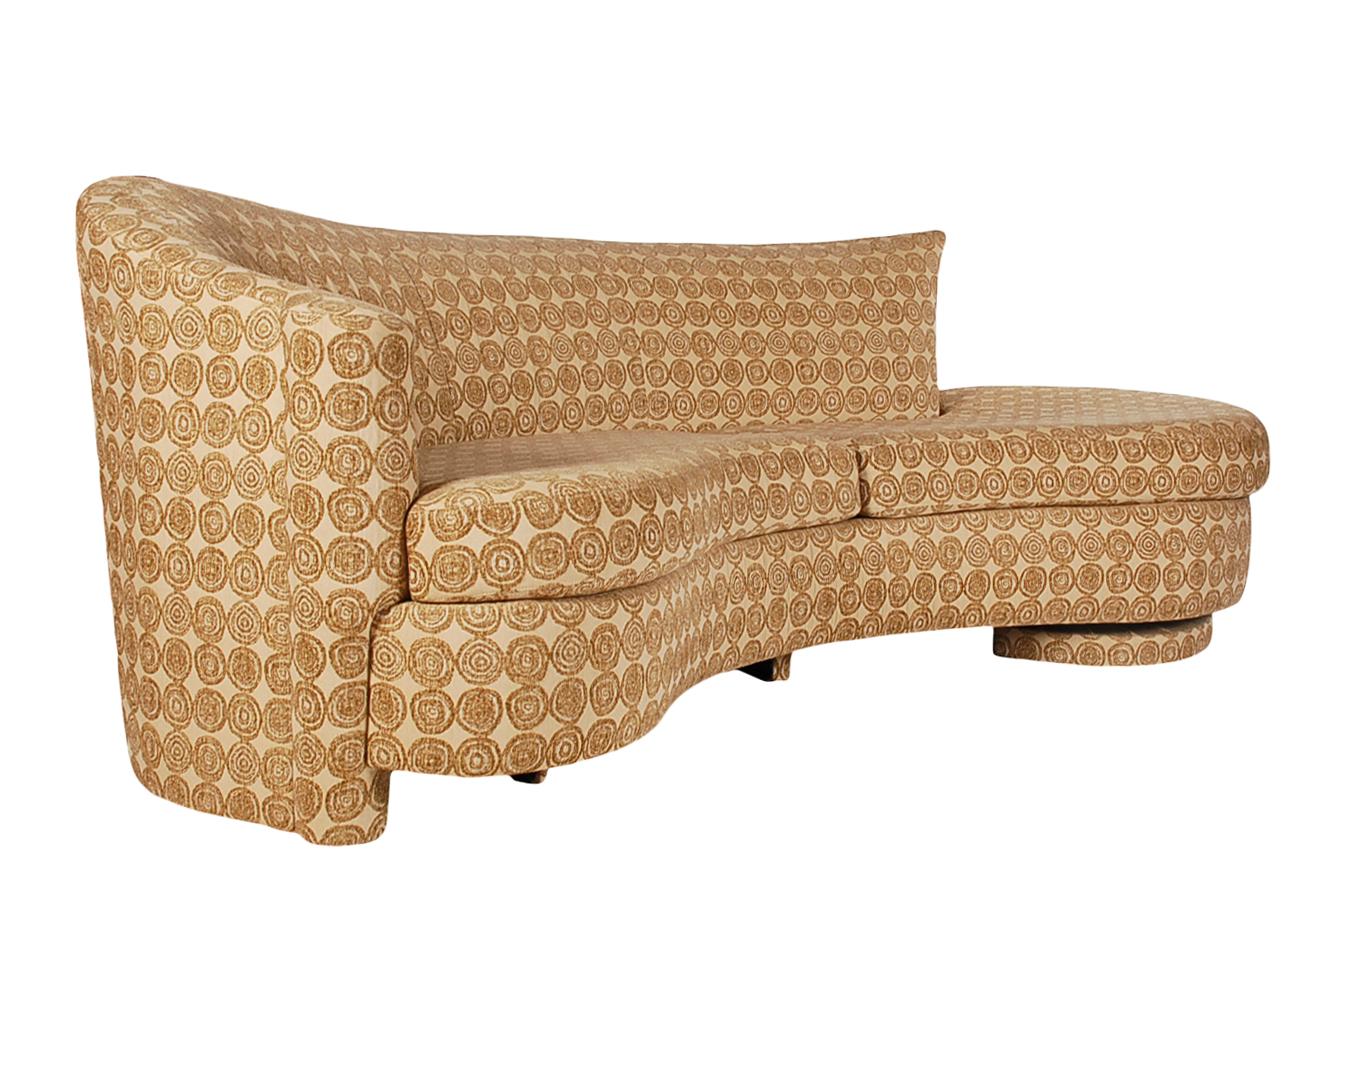 Ein formschönes Vintage-Sofa aus den 1970er Jahren, das sehr an ein Serpentine-Sofa erinnert. Dieses Sofa scheint ganz original zu sein, mit originalem Stoff aus der Zeit. Sehr sauberer, einsatzbereiter Zustand.